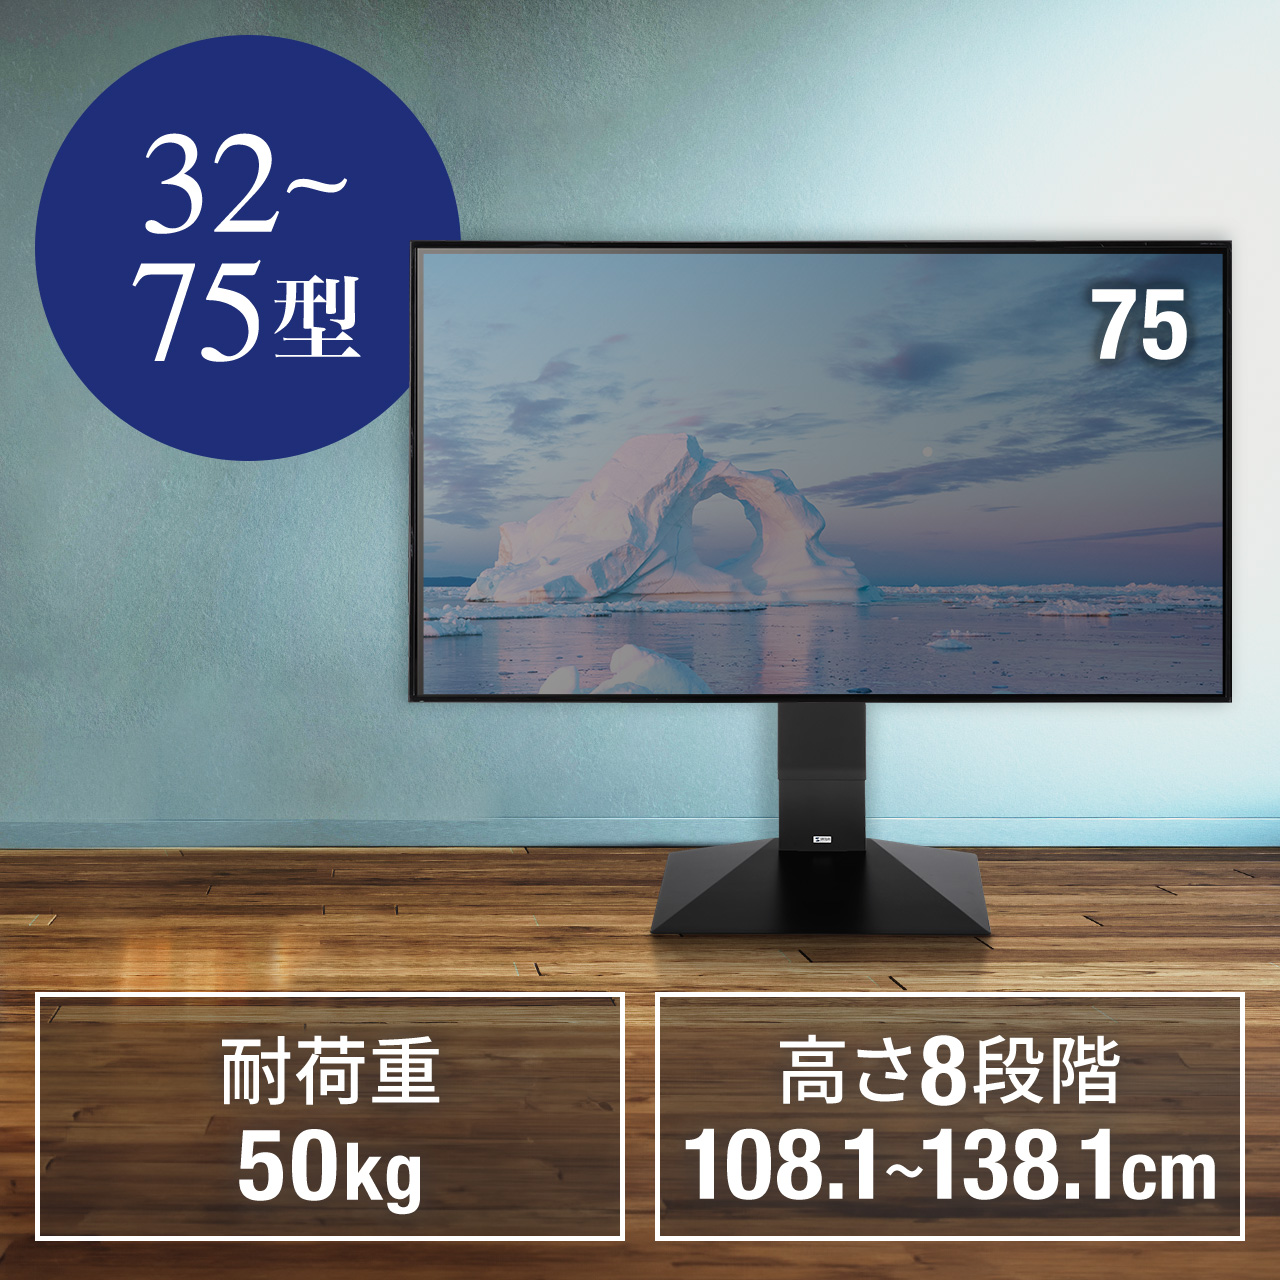 Samsung 4K 65インチテレビ 超美品!! - テレビ